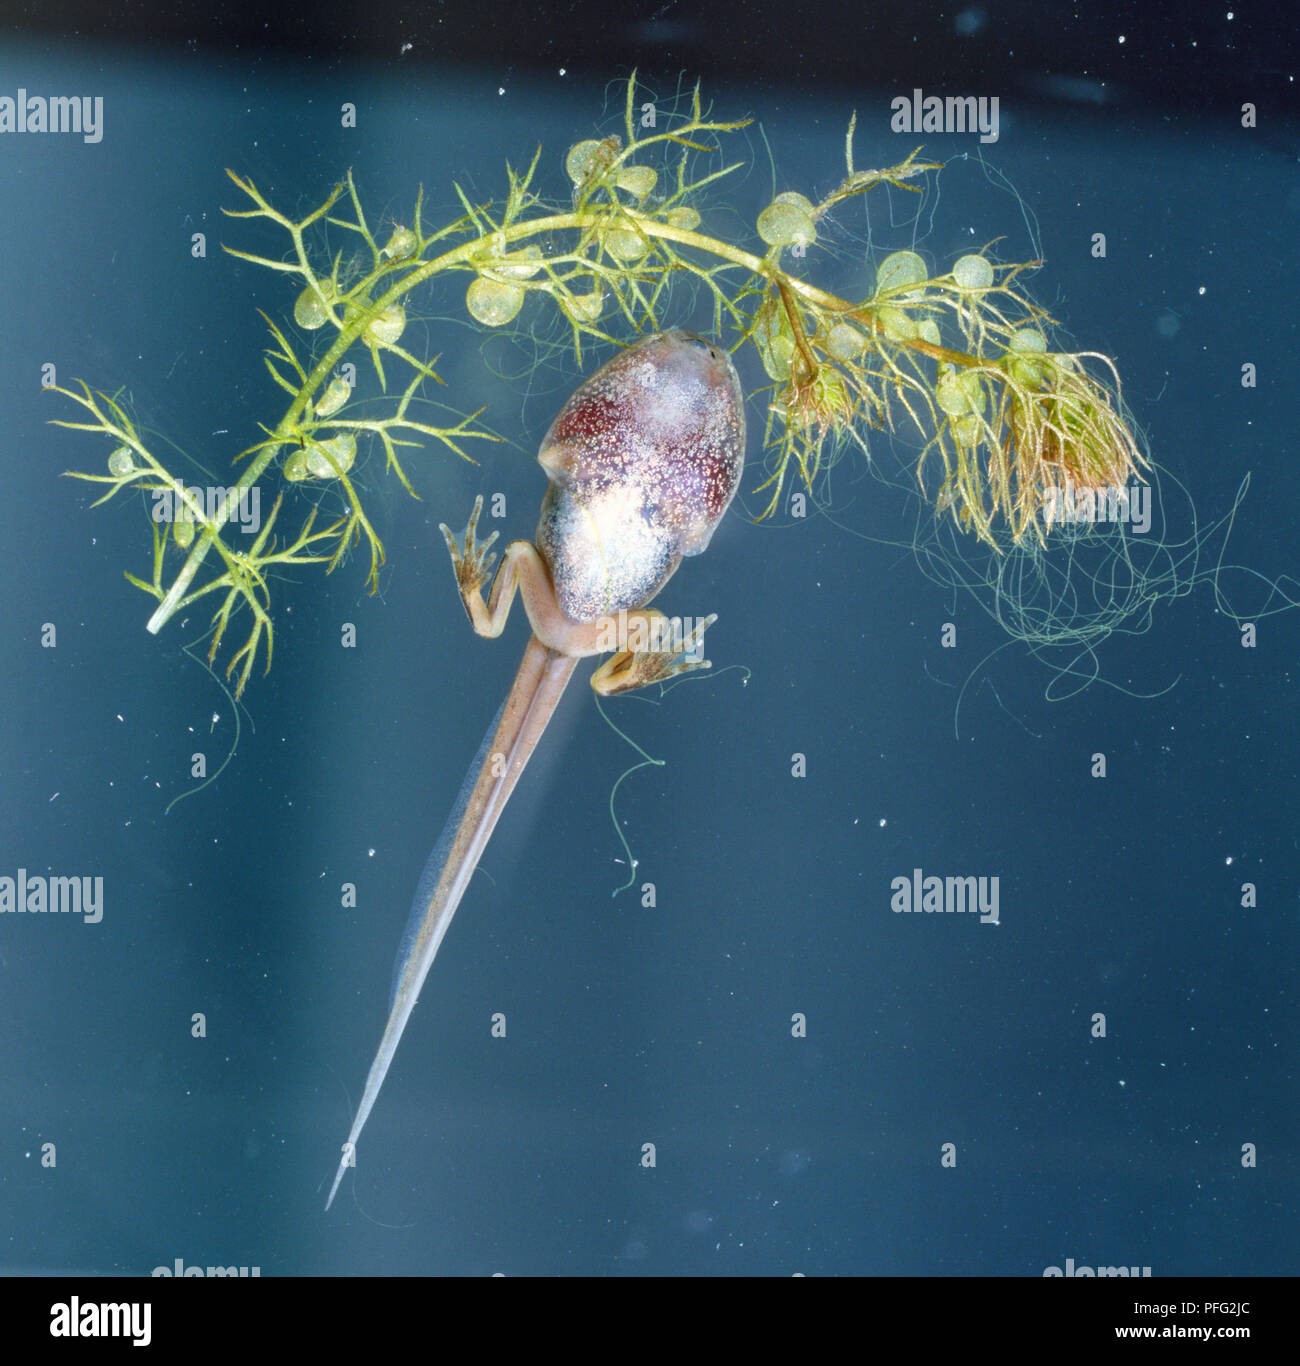 Kaulquappe entwickelt sich Frosch, Rücken Beine und Schwimmhäuten  Entwicklung von großen Körper, langer Schwanz, rosa gefärbten Körper, die  durch grüne Pflanze, von unten gesehen Stockfotografie - Alamy